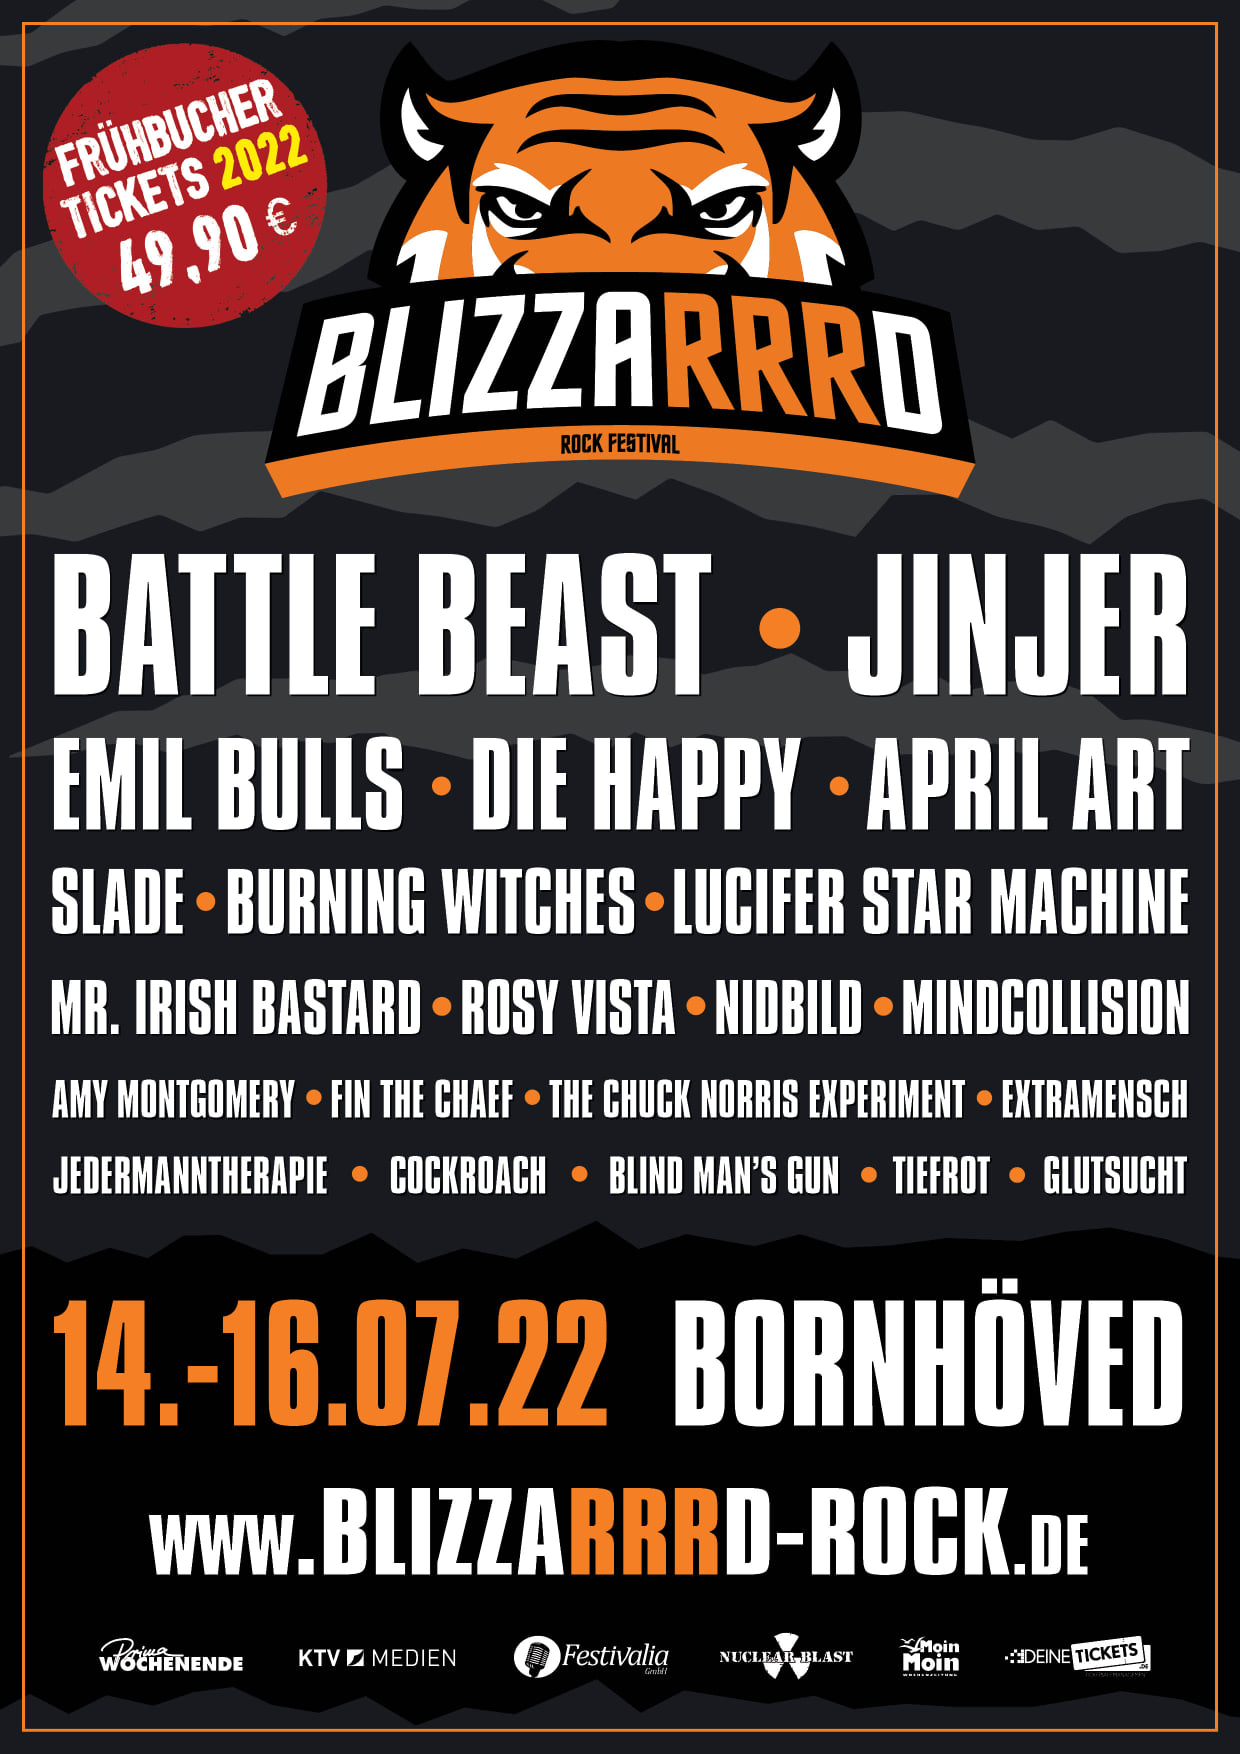 Blizzarrrd Rock Festival, 14.-16.07.2022 Bornhöved – Vorbericht